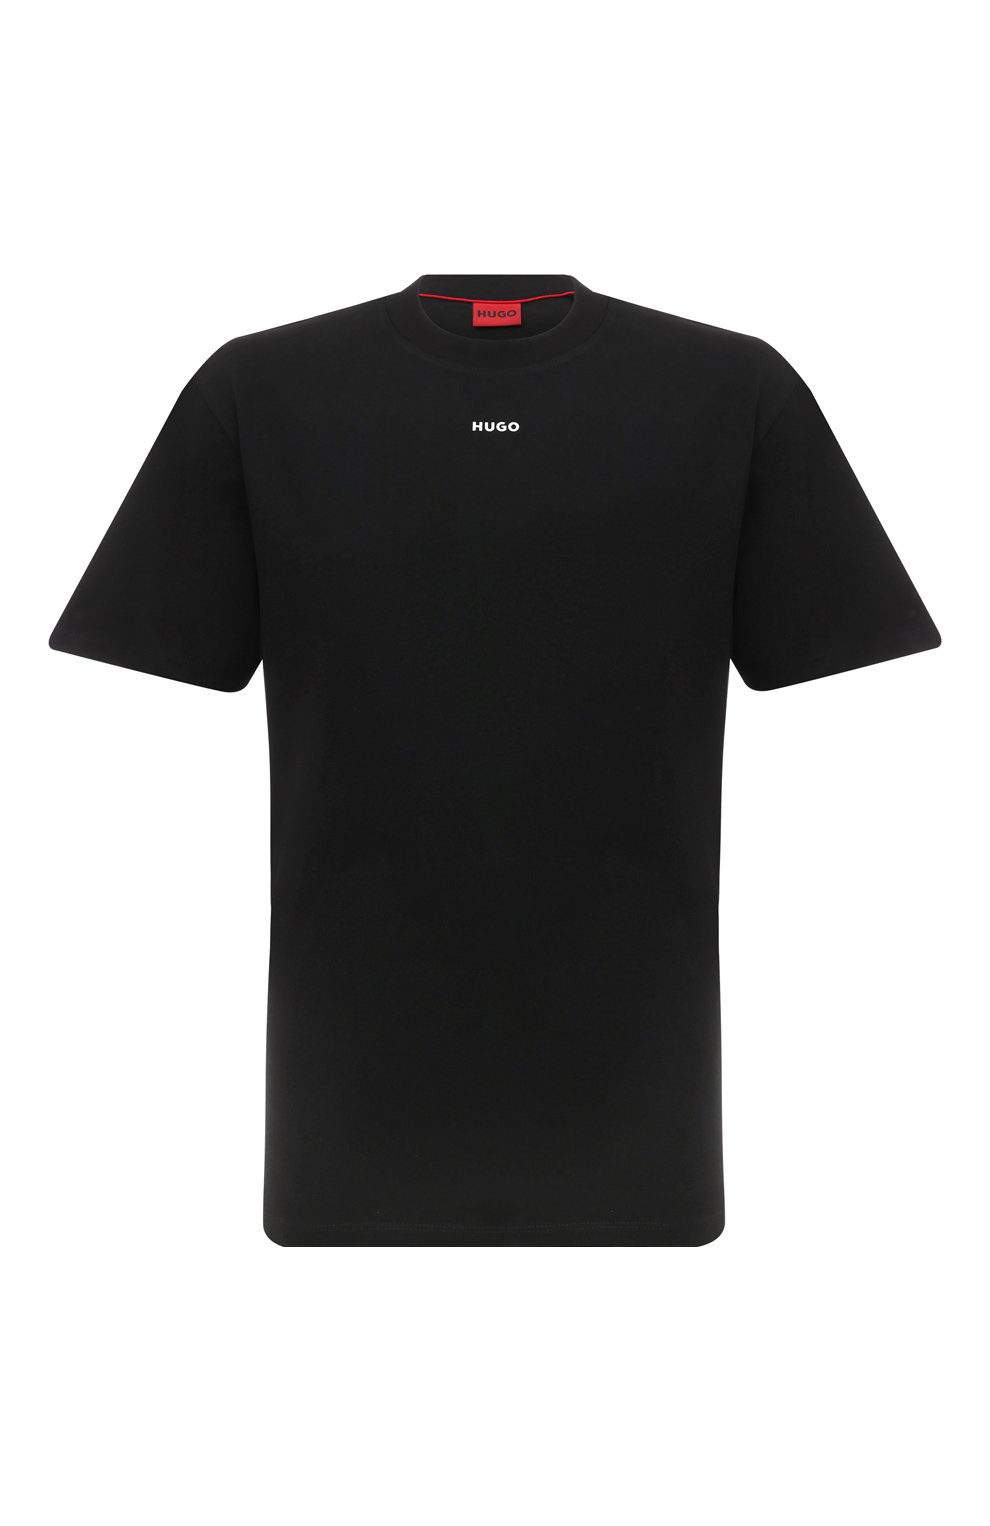 Хлопковая футболка HUGO 50488330, цвет чёрный, размер 52